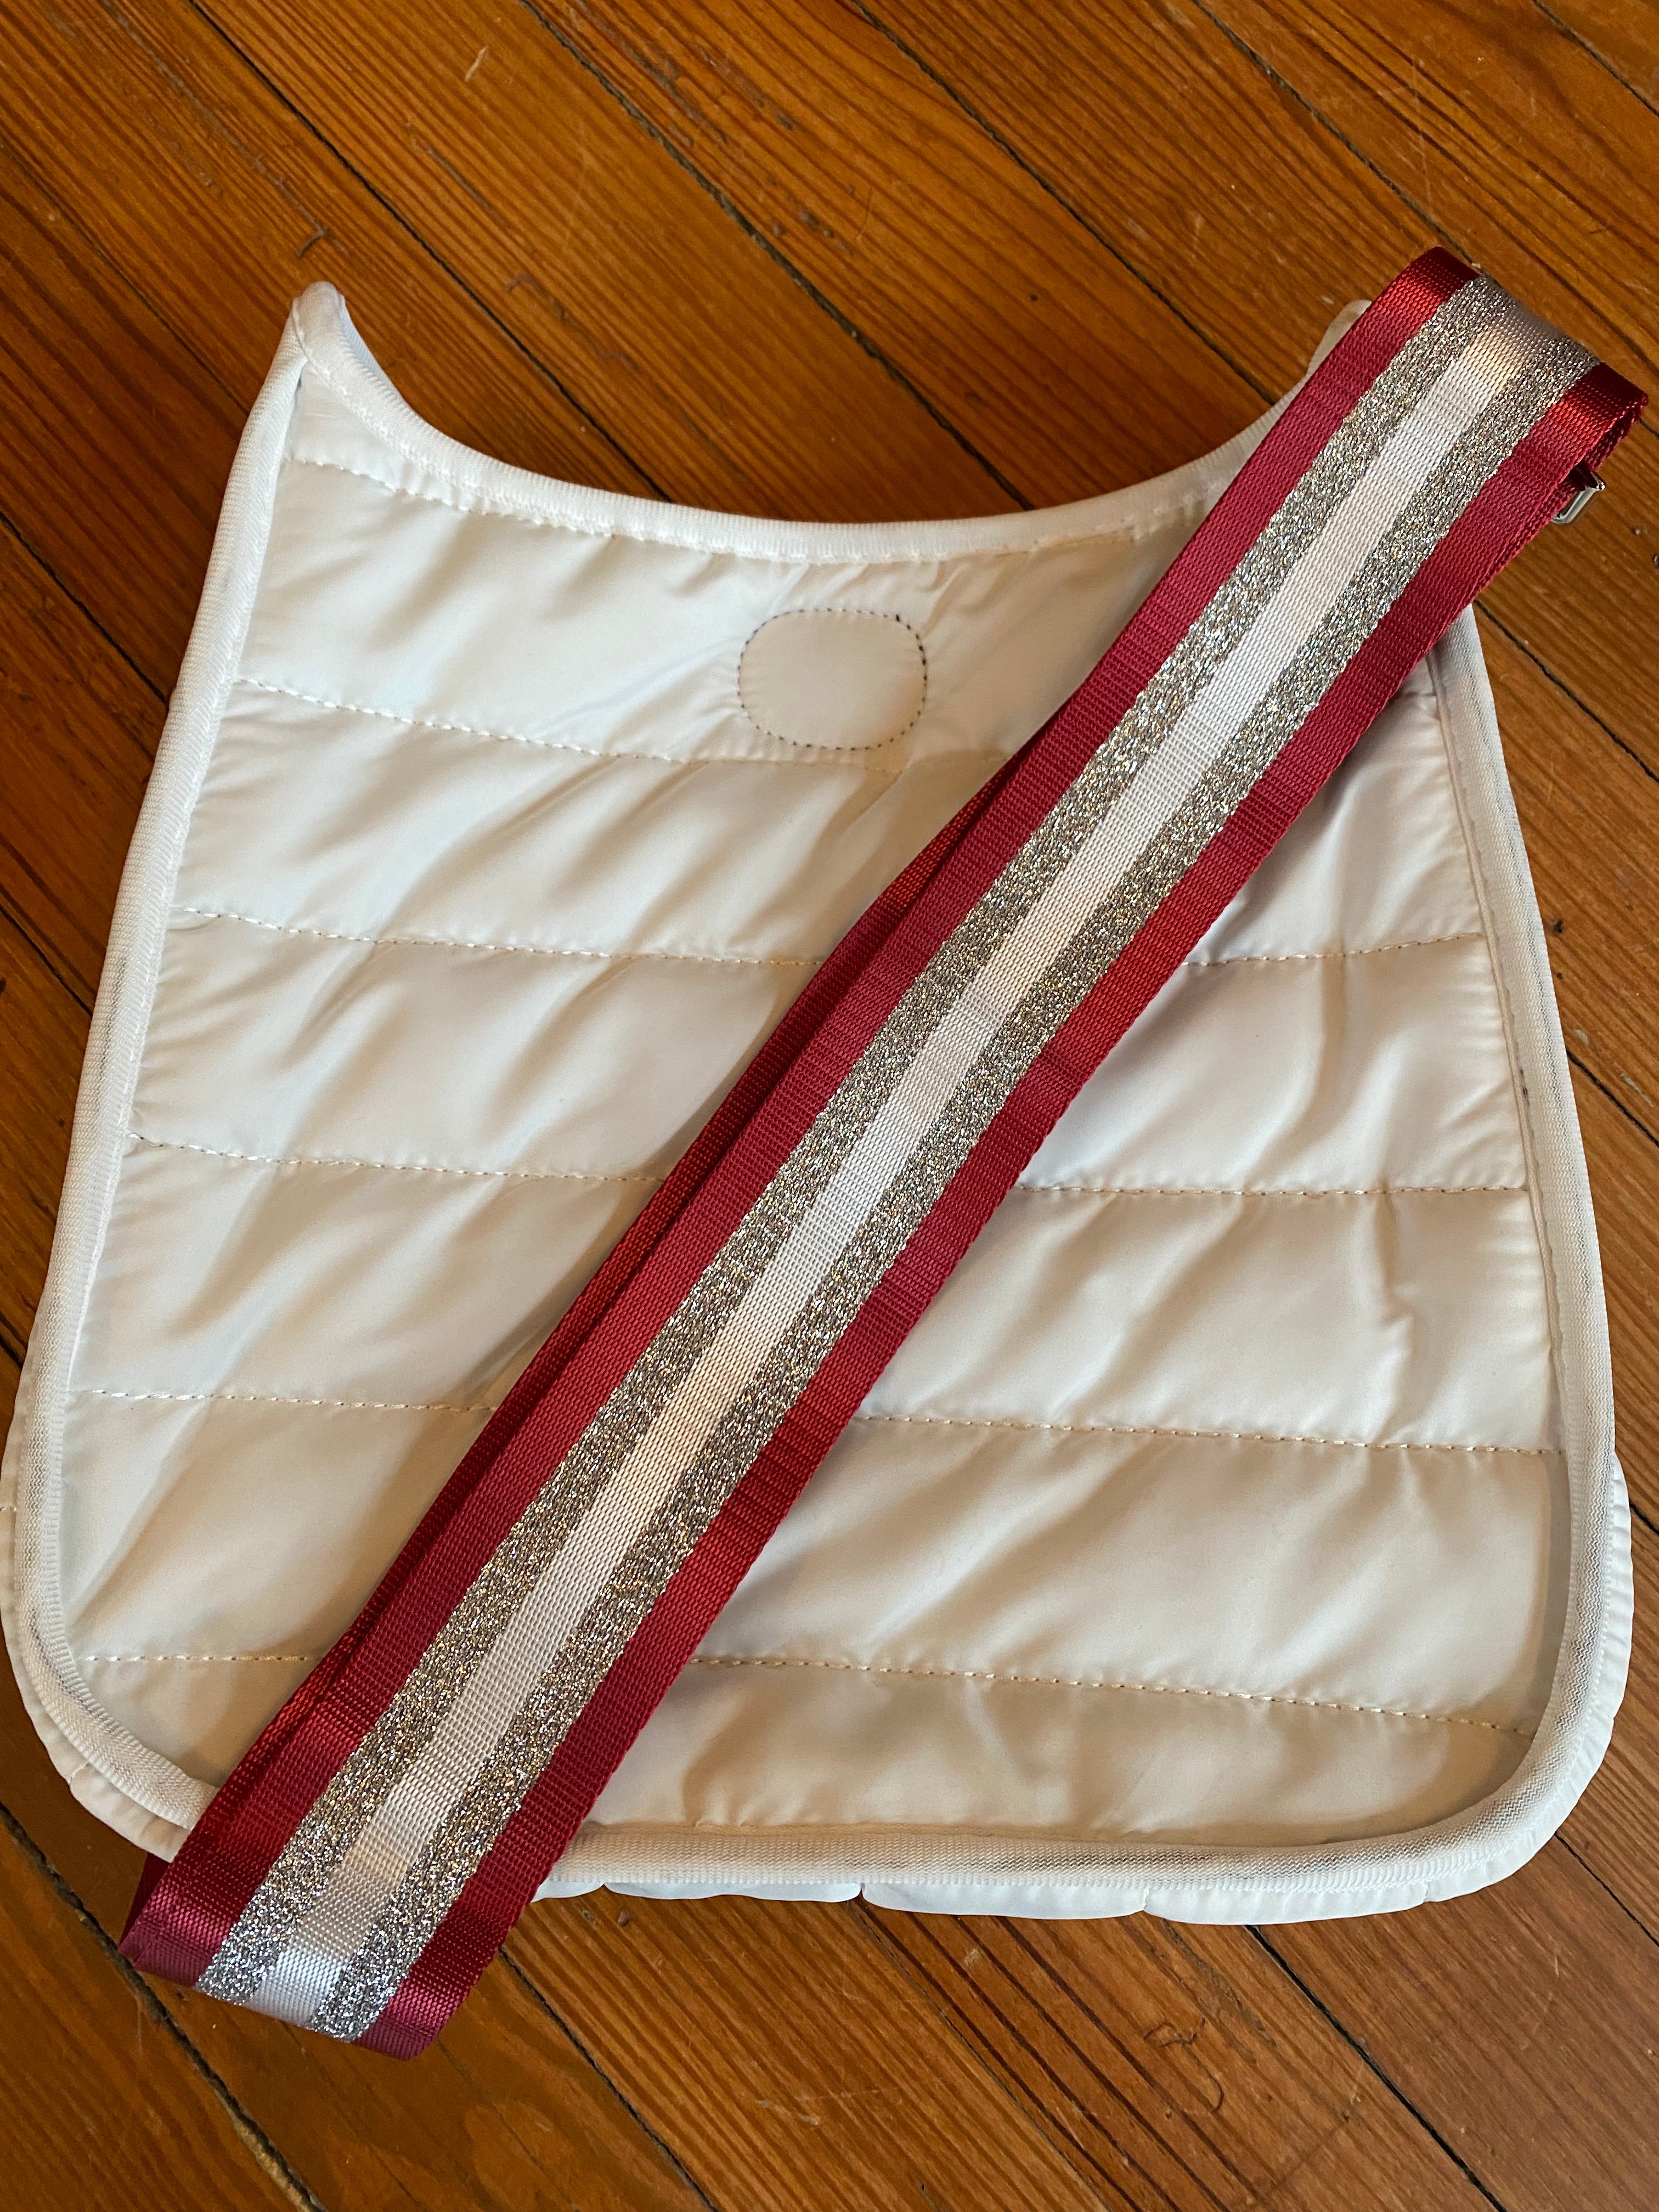 Bag/Purse Straps: Stripes